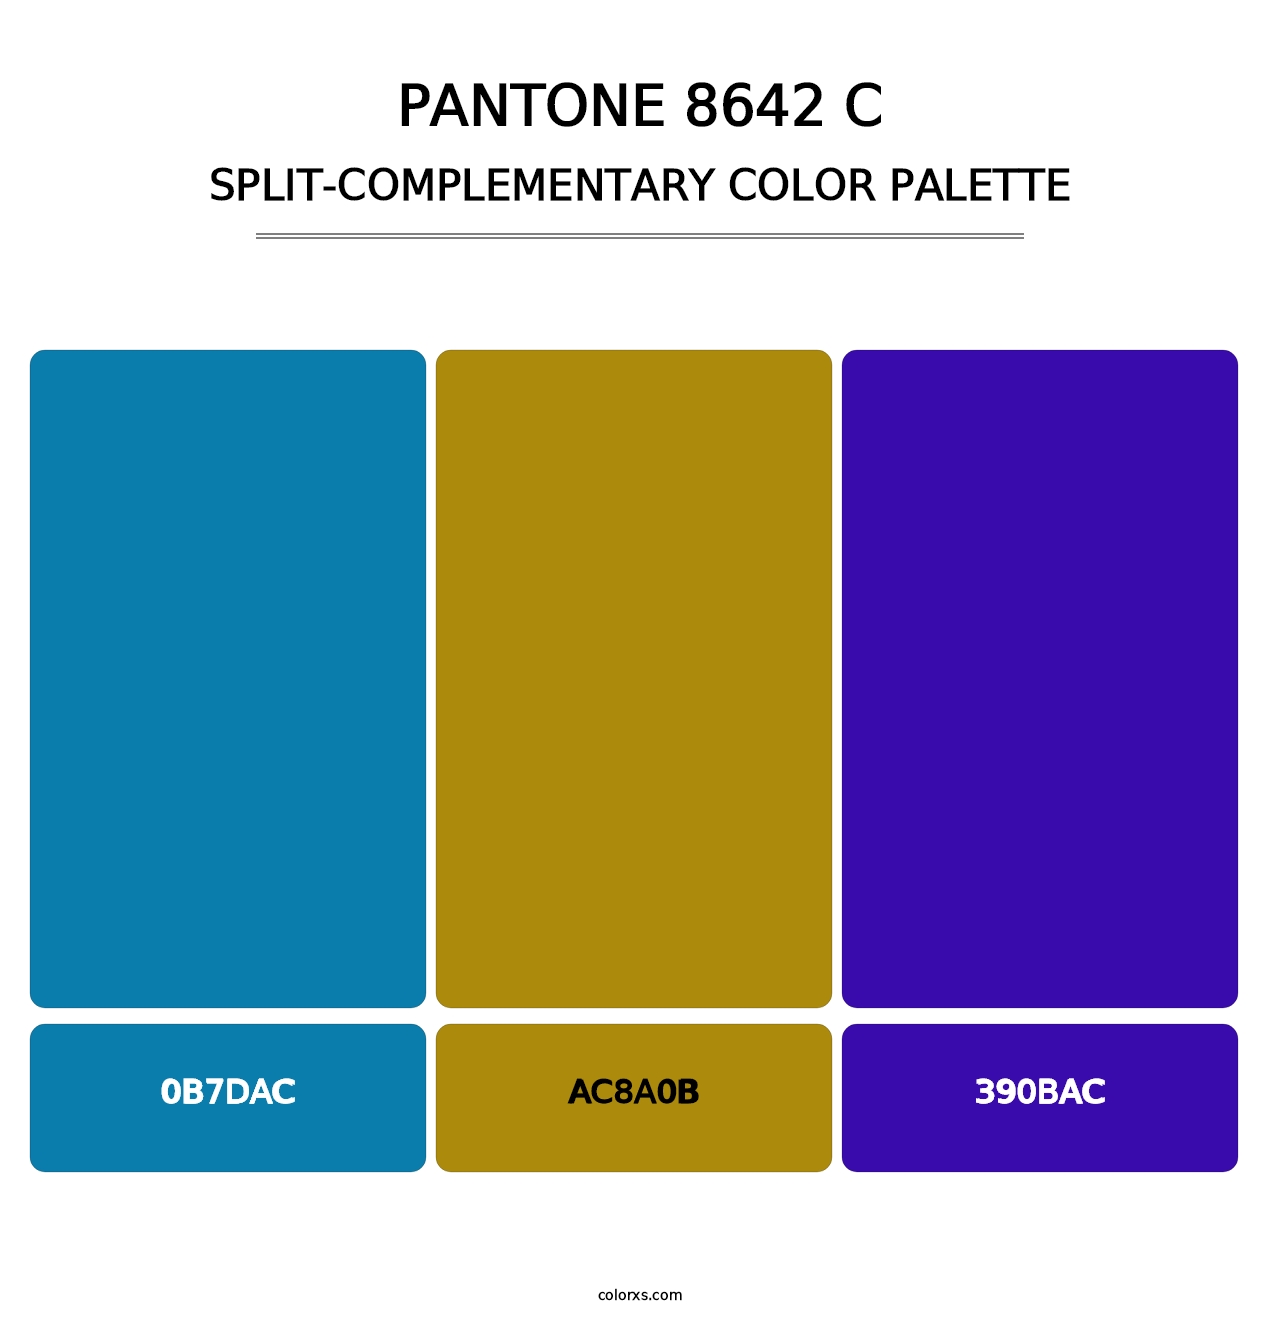 PANTONE 8642 C - Split-Complementary Color Palette